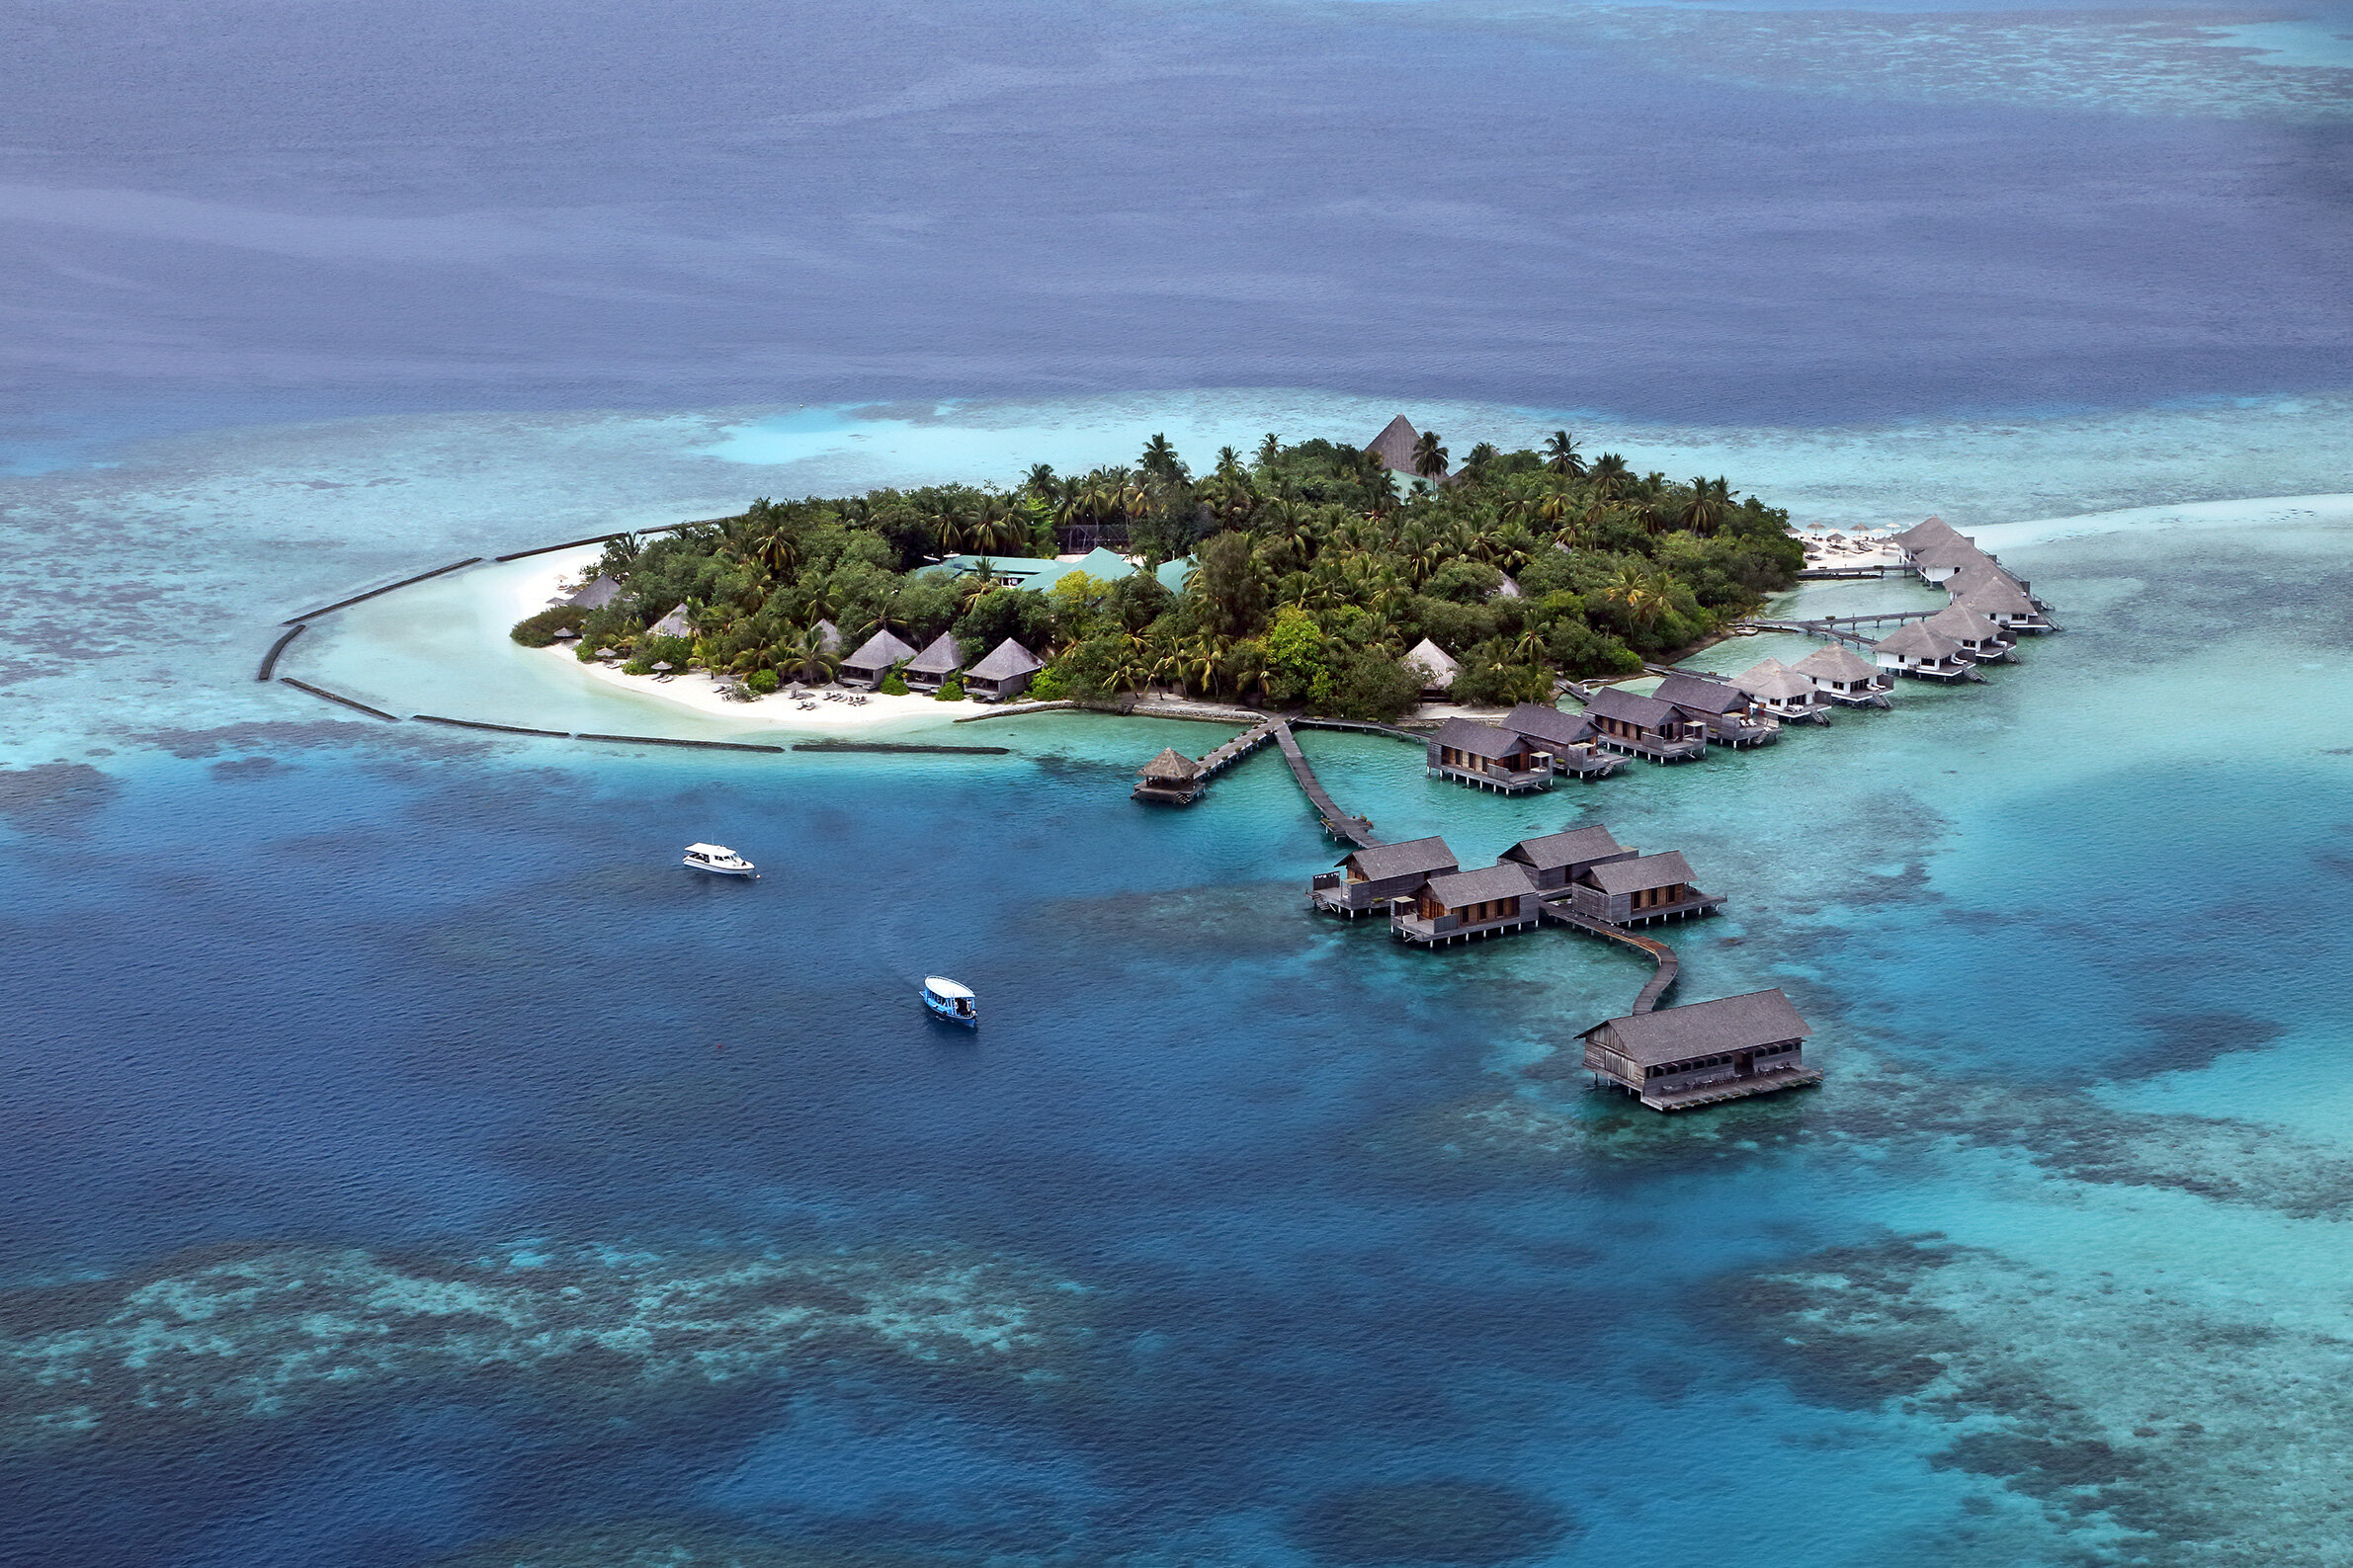 maldive-hotel-gangehi-resort-vista-isola-wadidestination.jpg